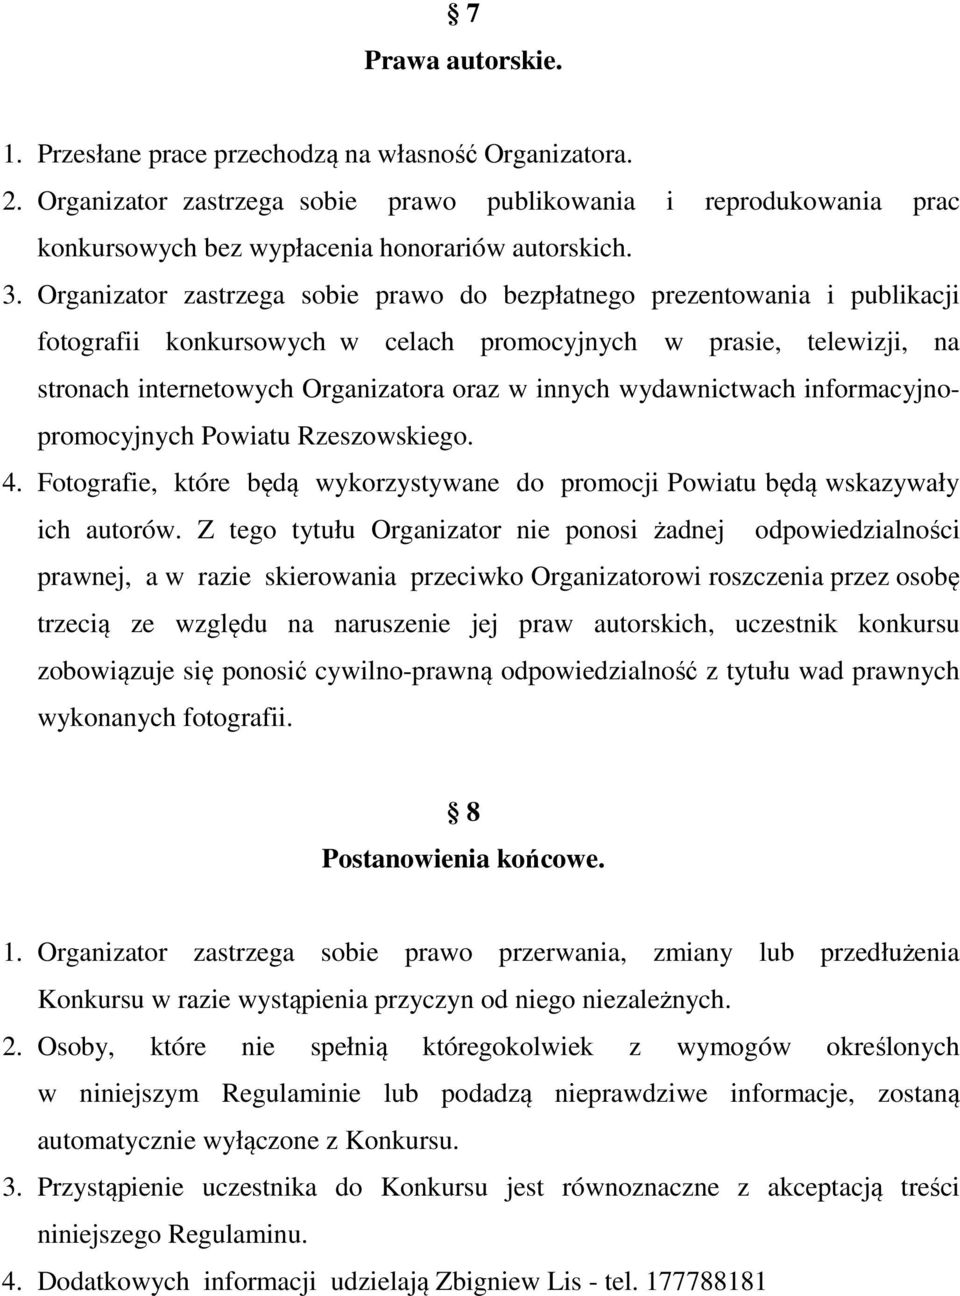 wydawnictwach informacyjnopromocyjnych Powiatu Rzeszowskiego. 4. Fotografie, które będą wykorzystywane do promocji Powiatu będą wskazywały ich autorów.